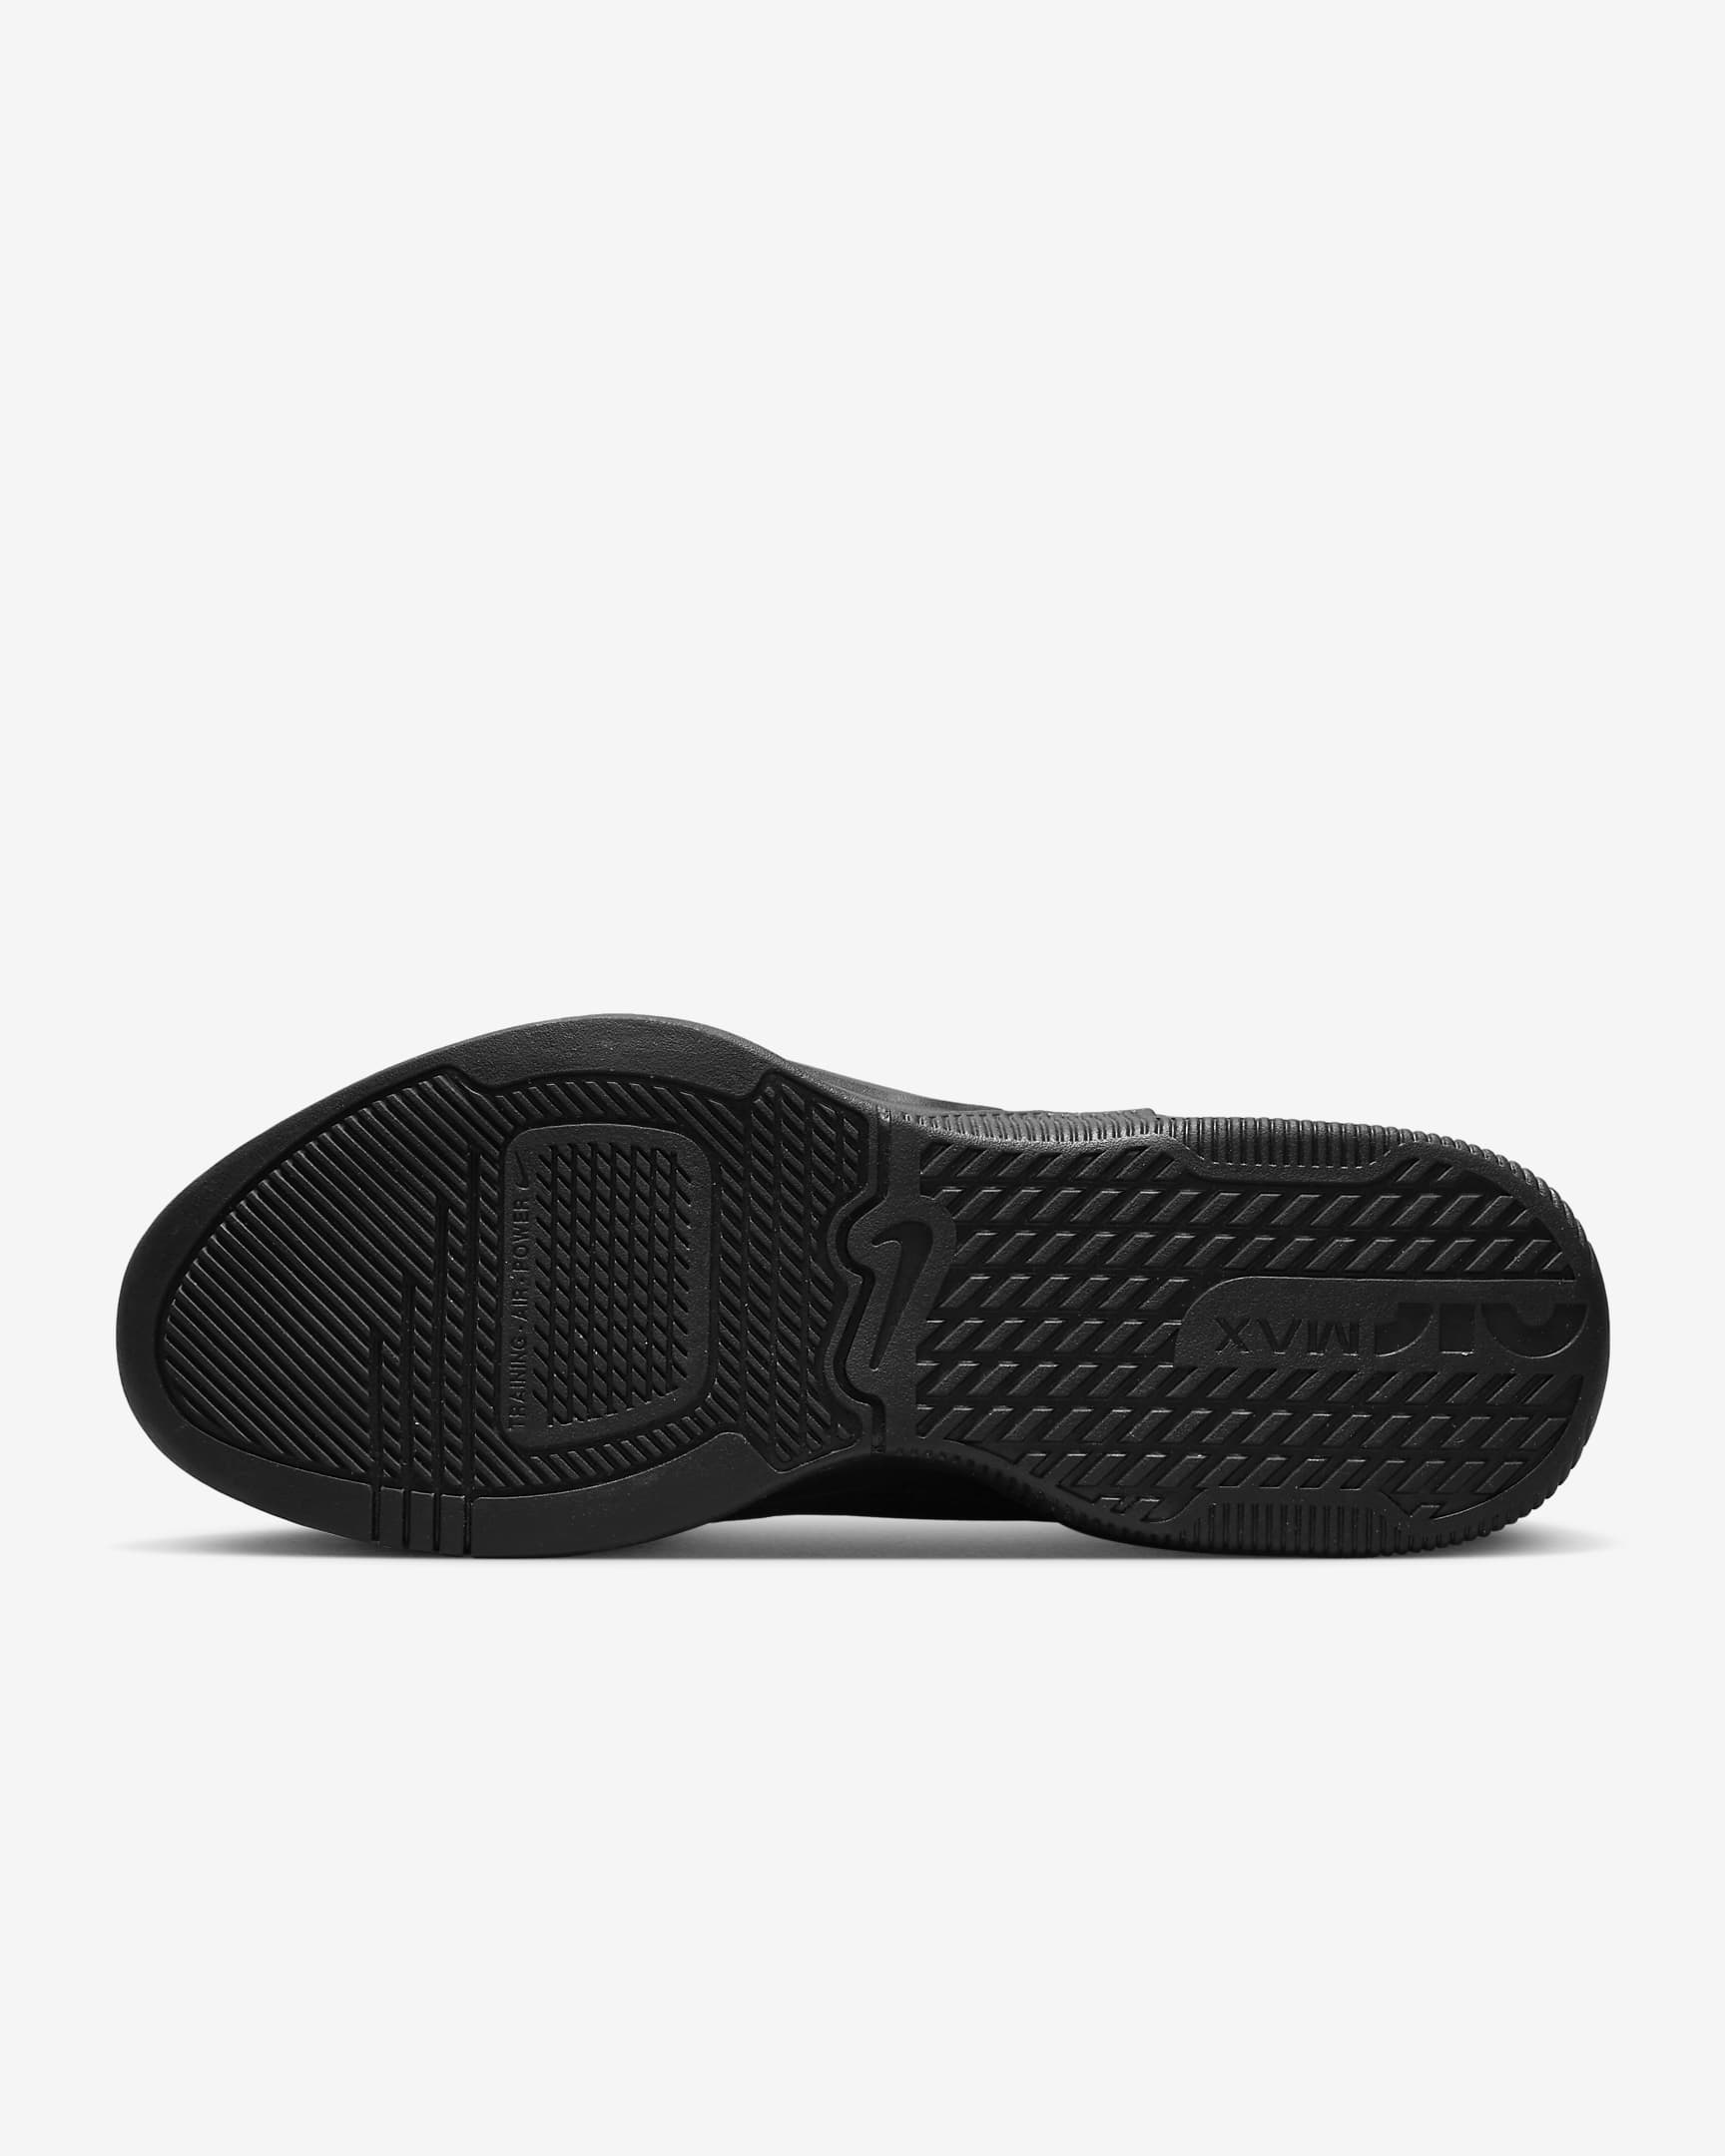 Nike Air Max Alpha Trainer 5 Zapatillas de training - Hombre - Negro/Negro/Dark Smoke Grey